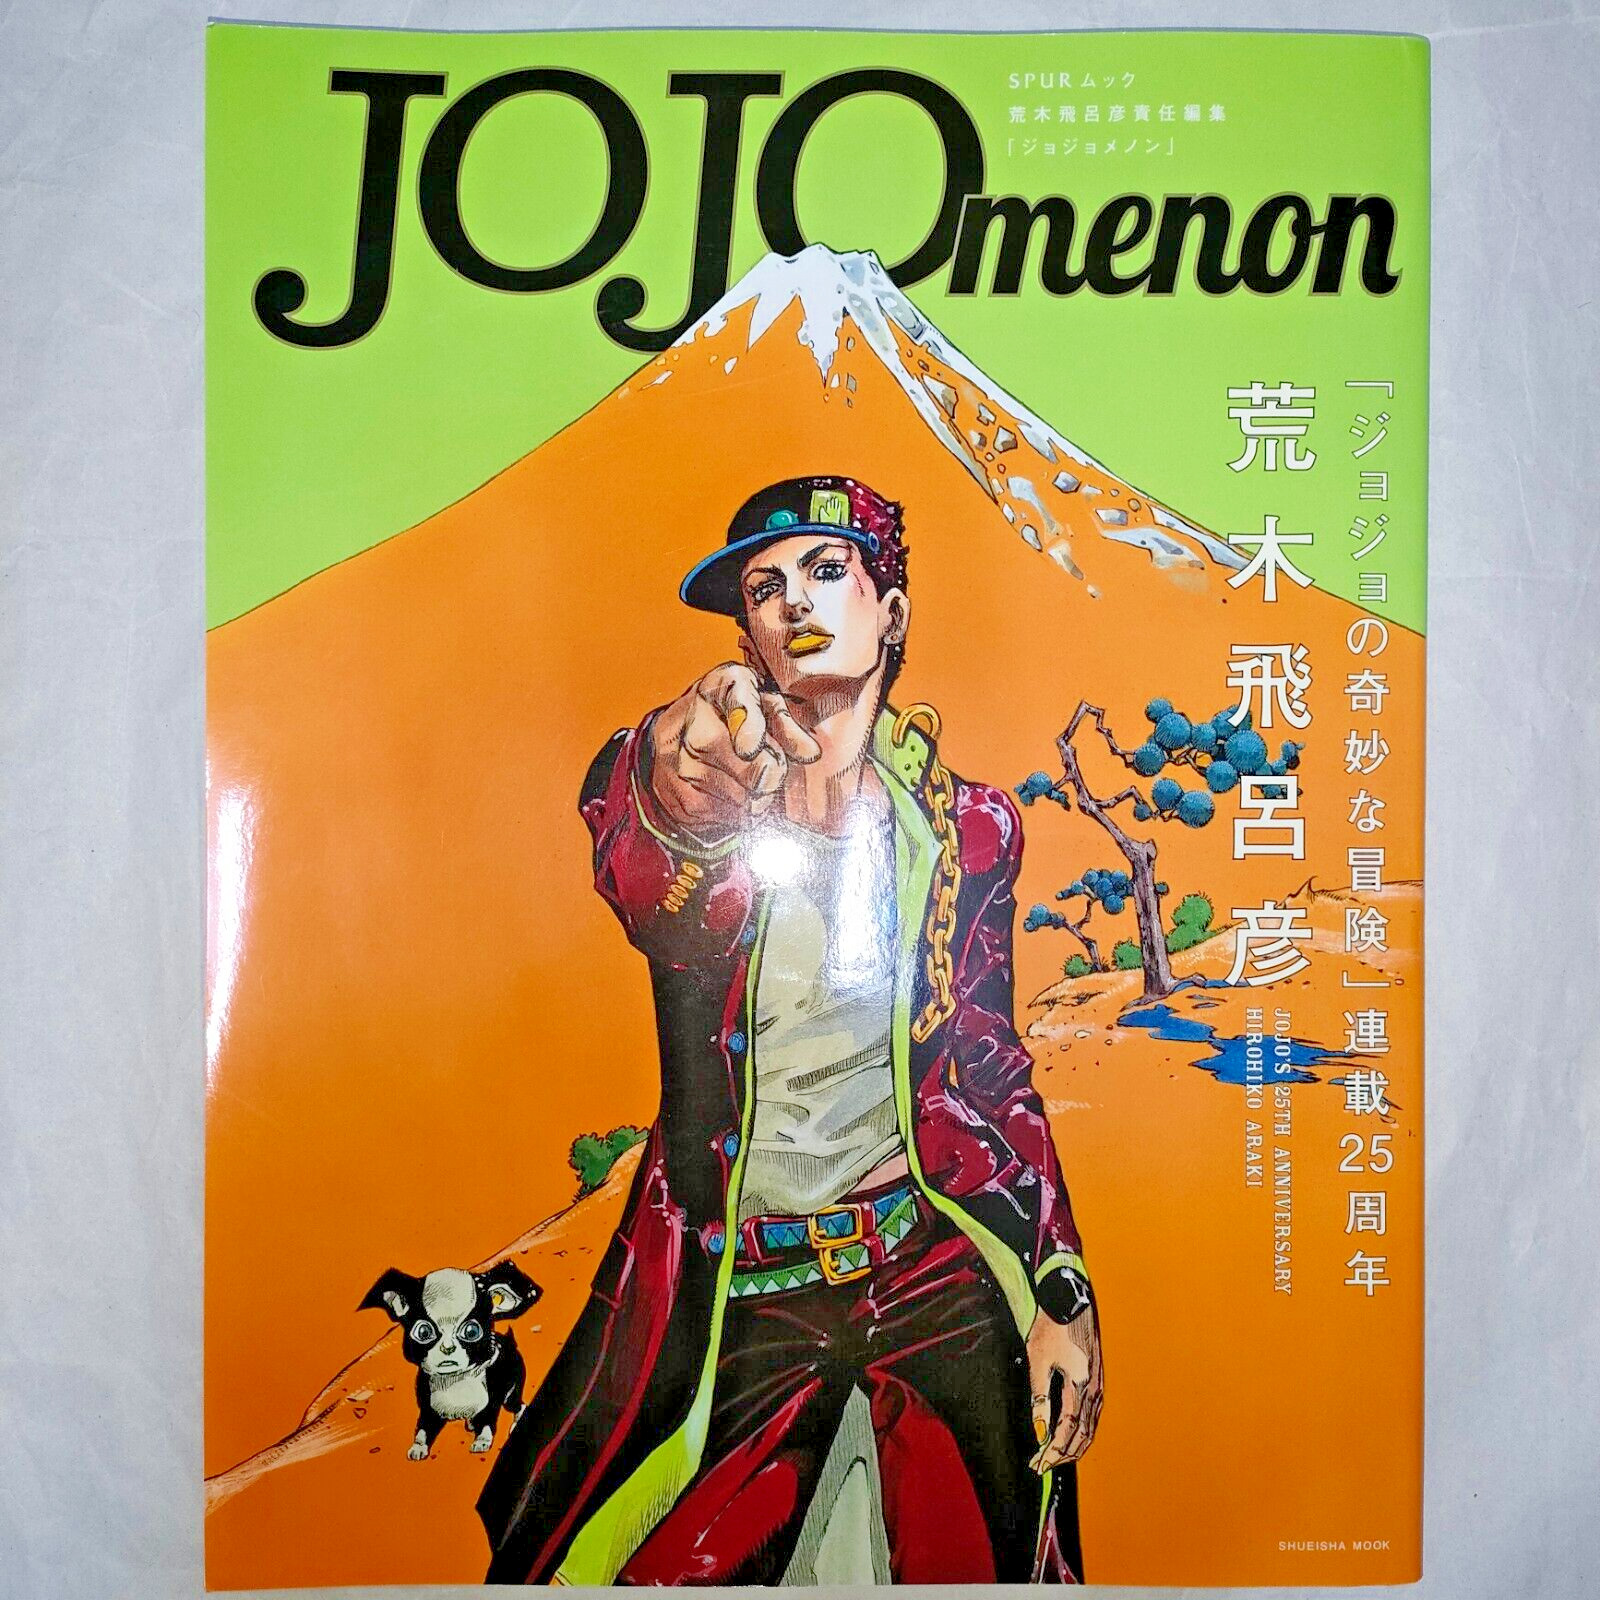 JOJO menon JoJo's Bizarre Adventure Hirohiko Araki Art Book with appendices